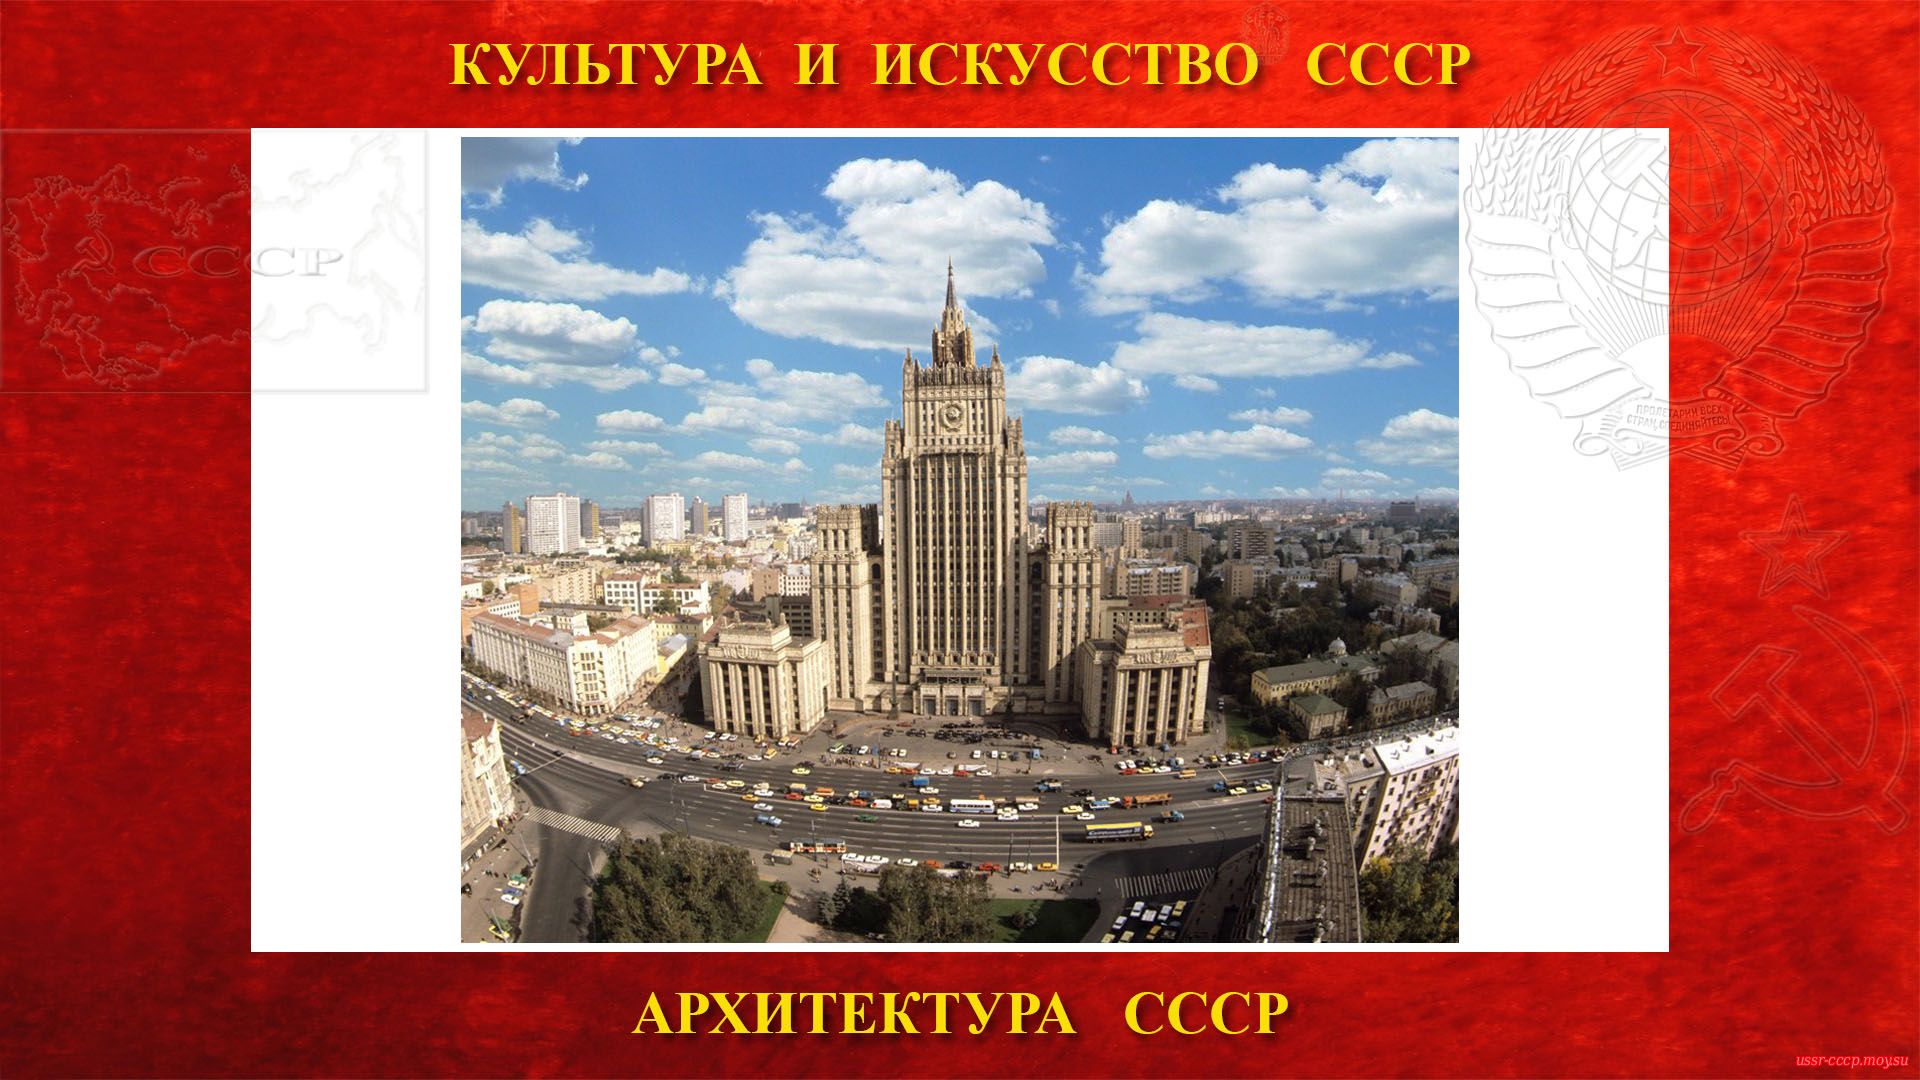 Курдонёр в СССР— парадный двор перед зданием (повествование)